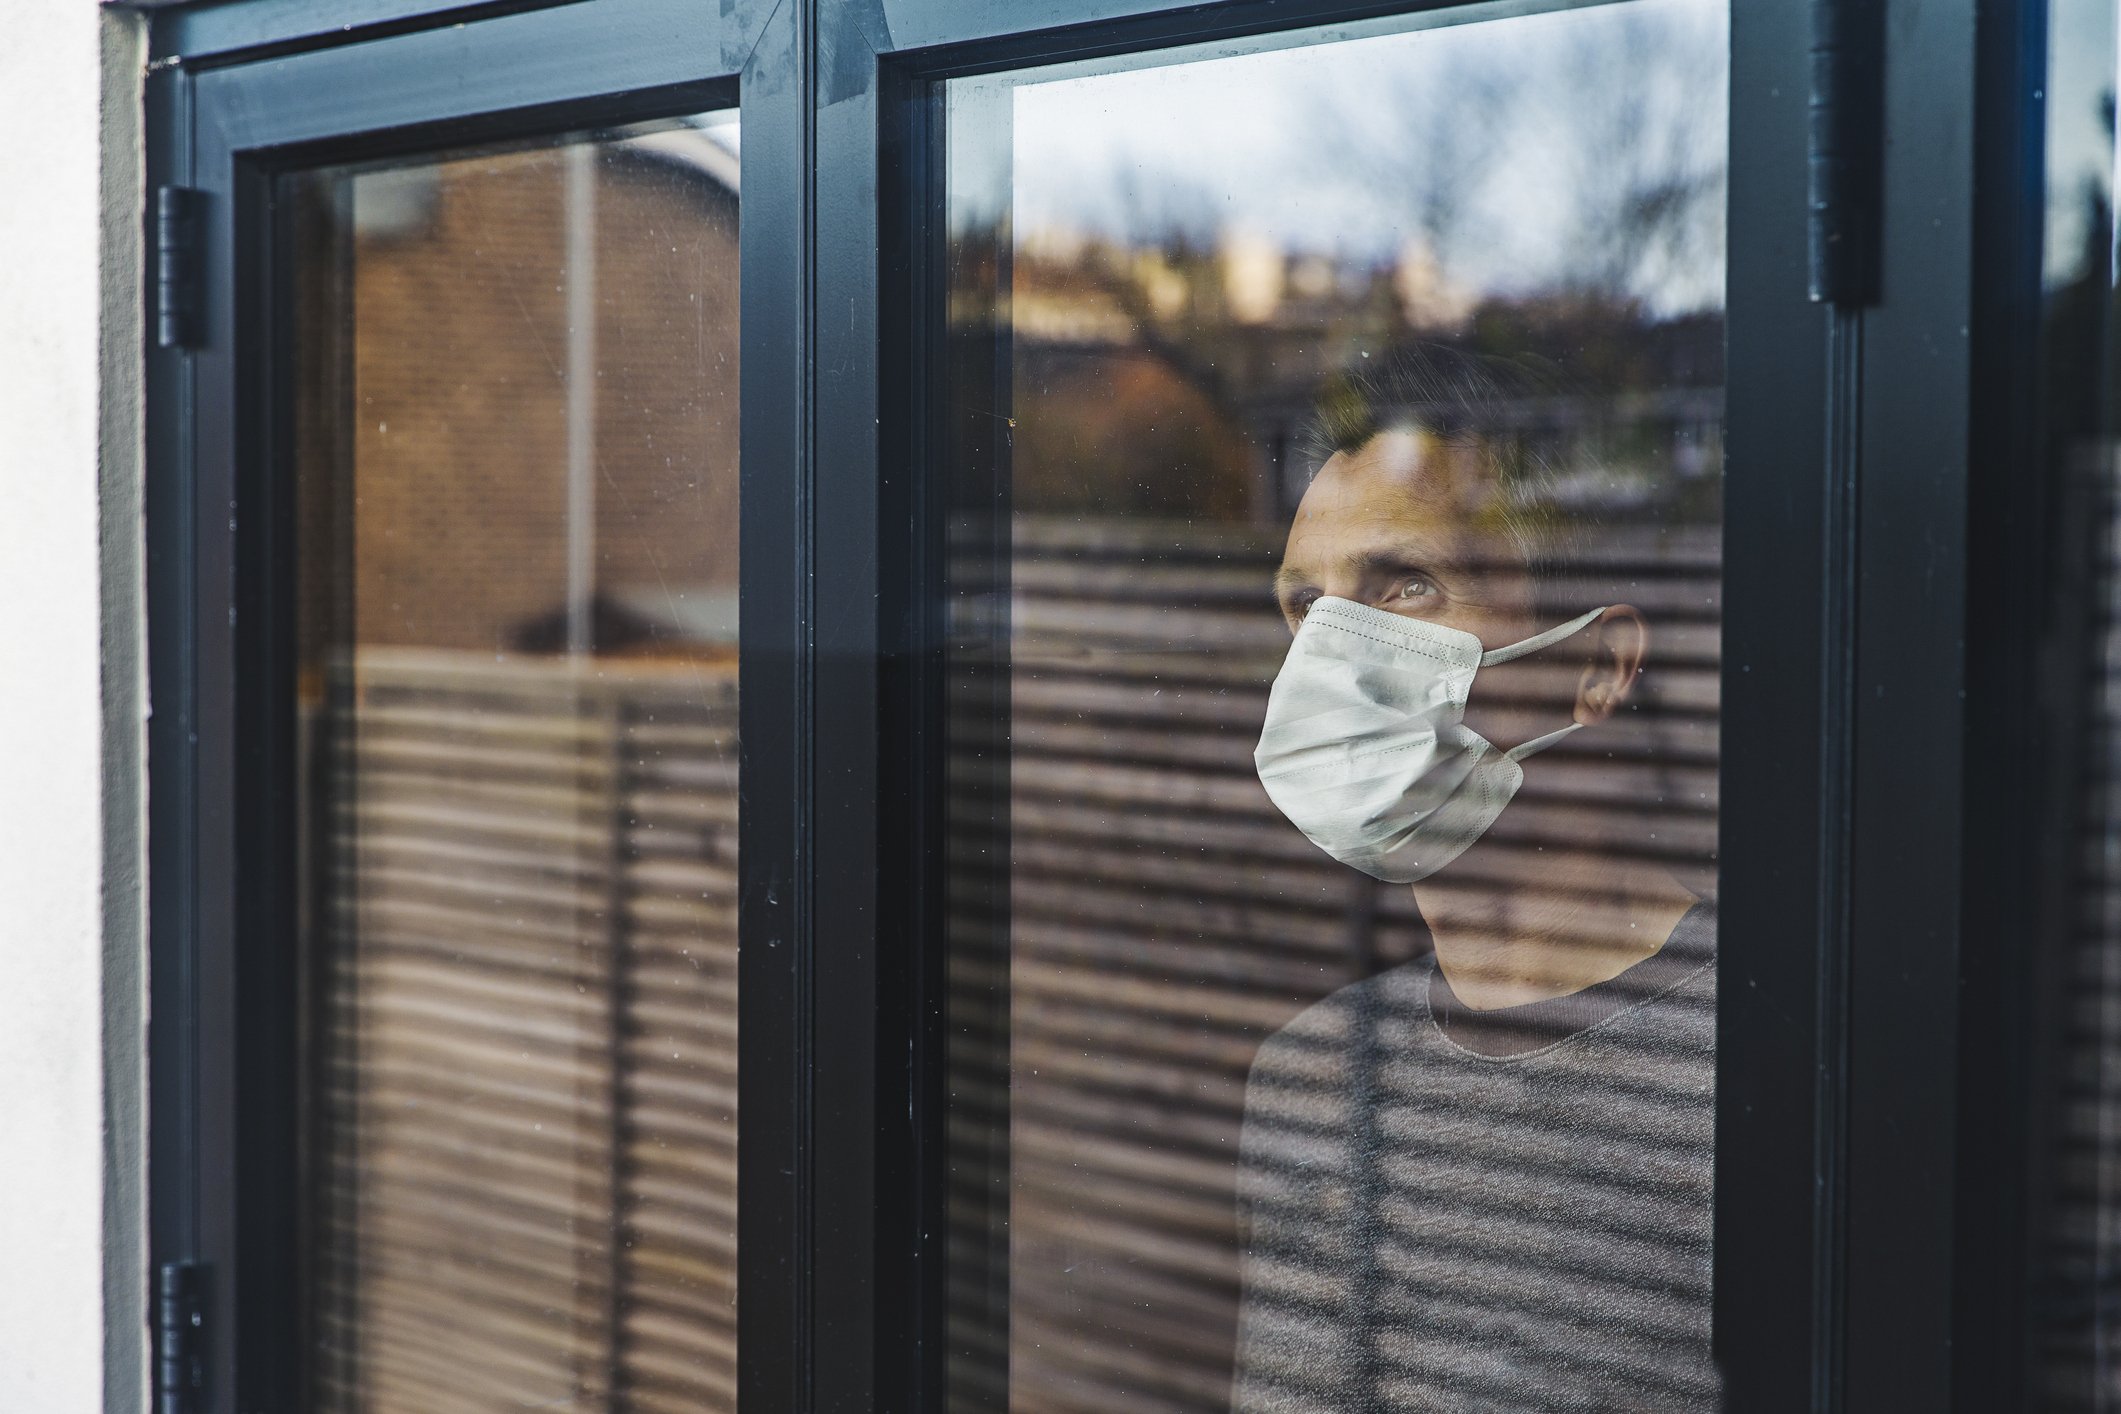 Mann mit Maske, die aus dem Fenster schaut | Quelle: Getty Image